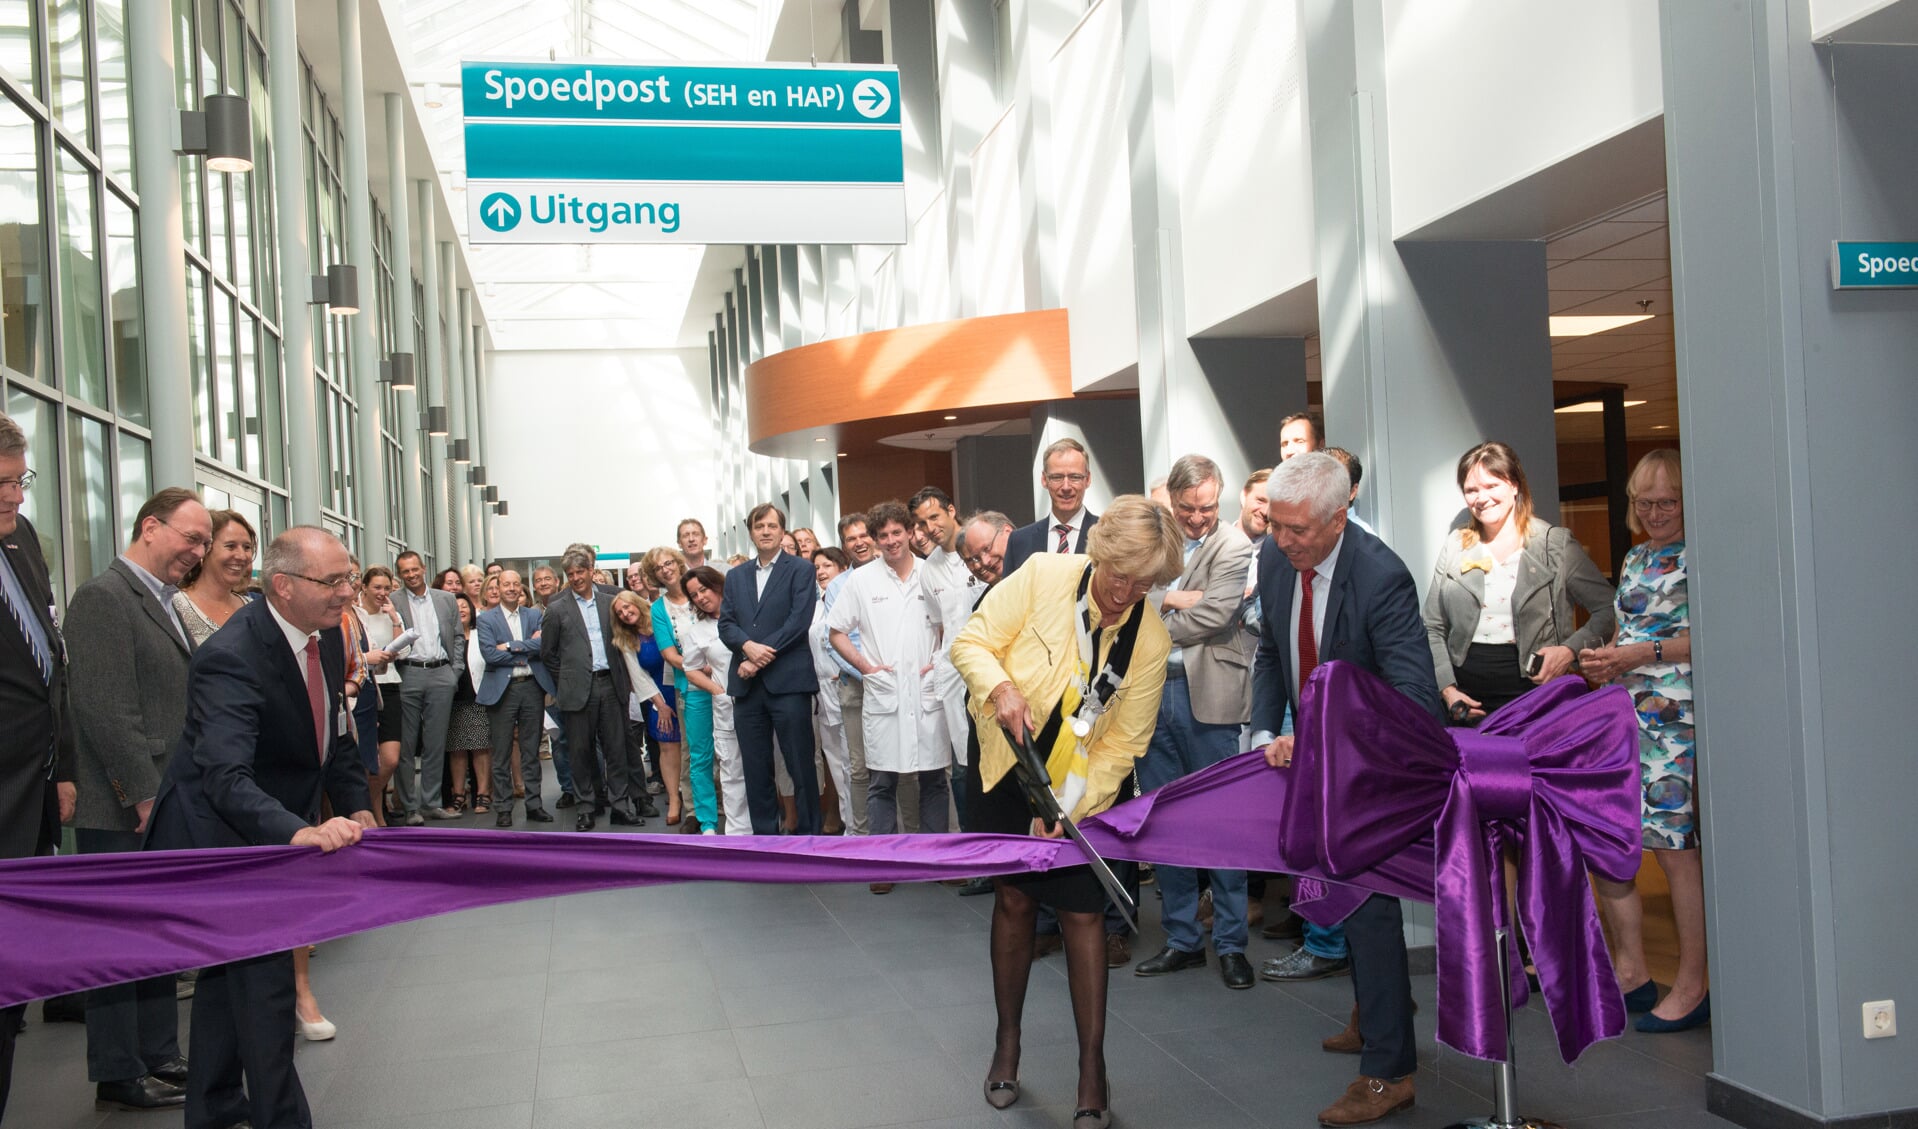 Burgemeester Driessen opent de spoedpost met het doorknippen van een lint. | Foto: PR